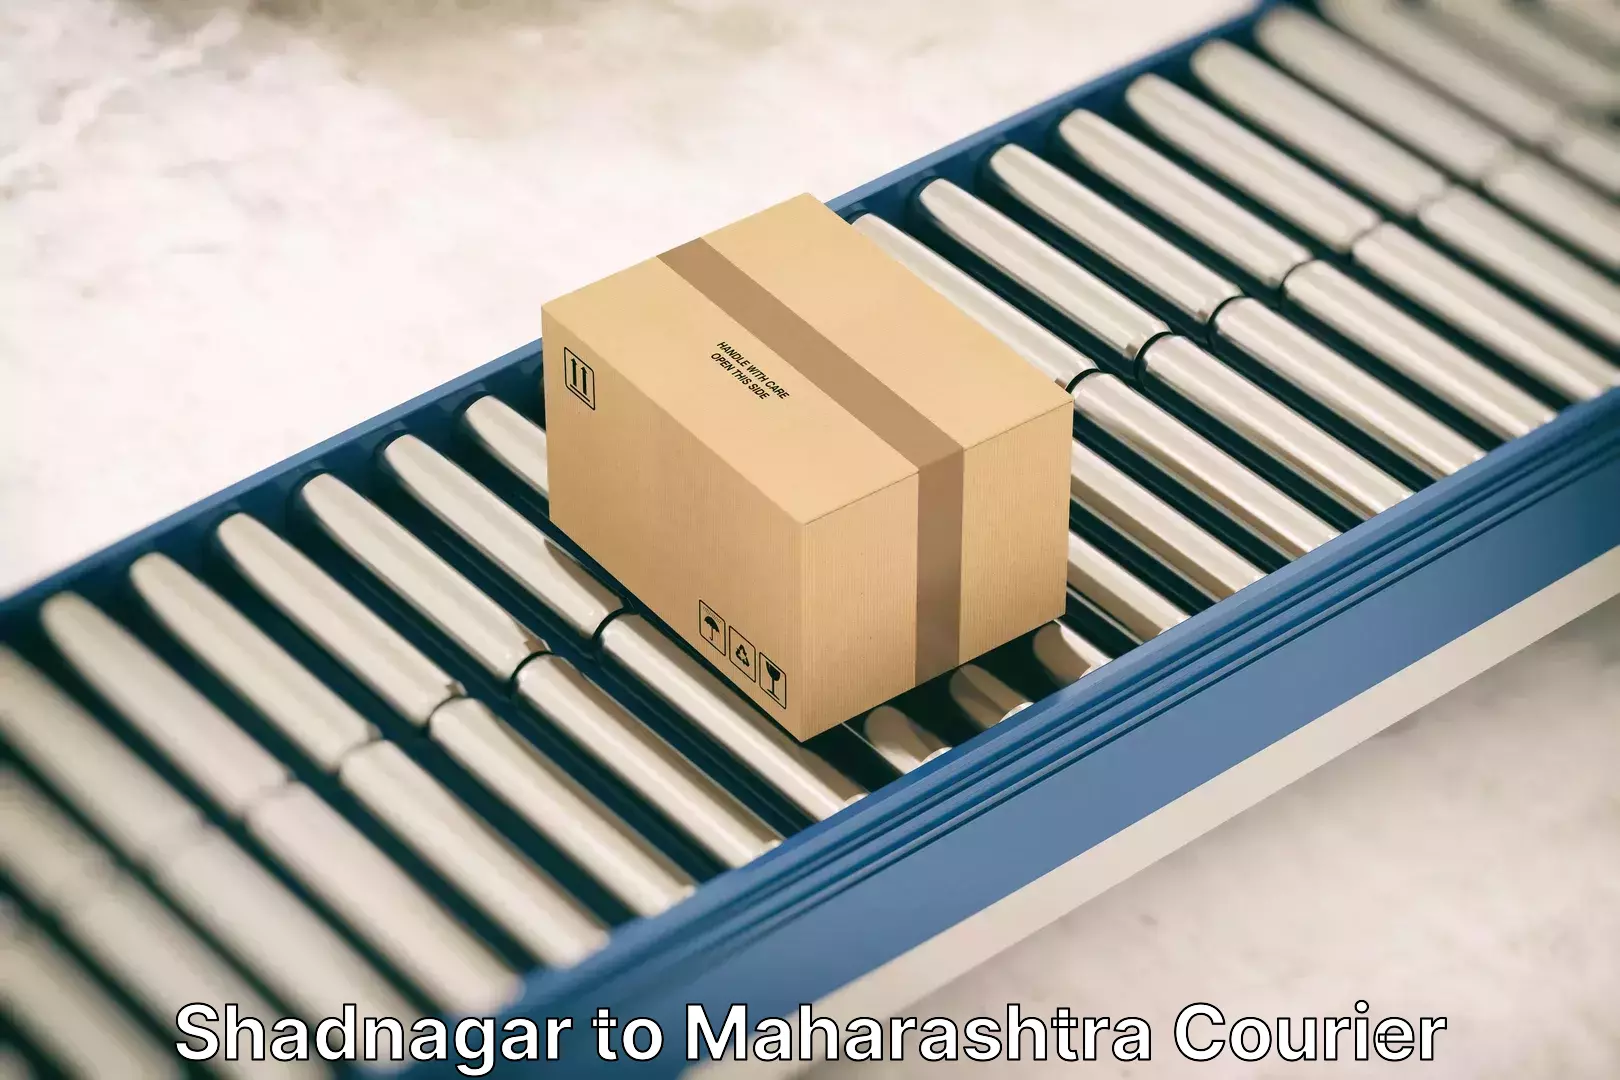 Efficient moving company Shadnagar to Maharashtra